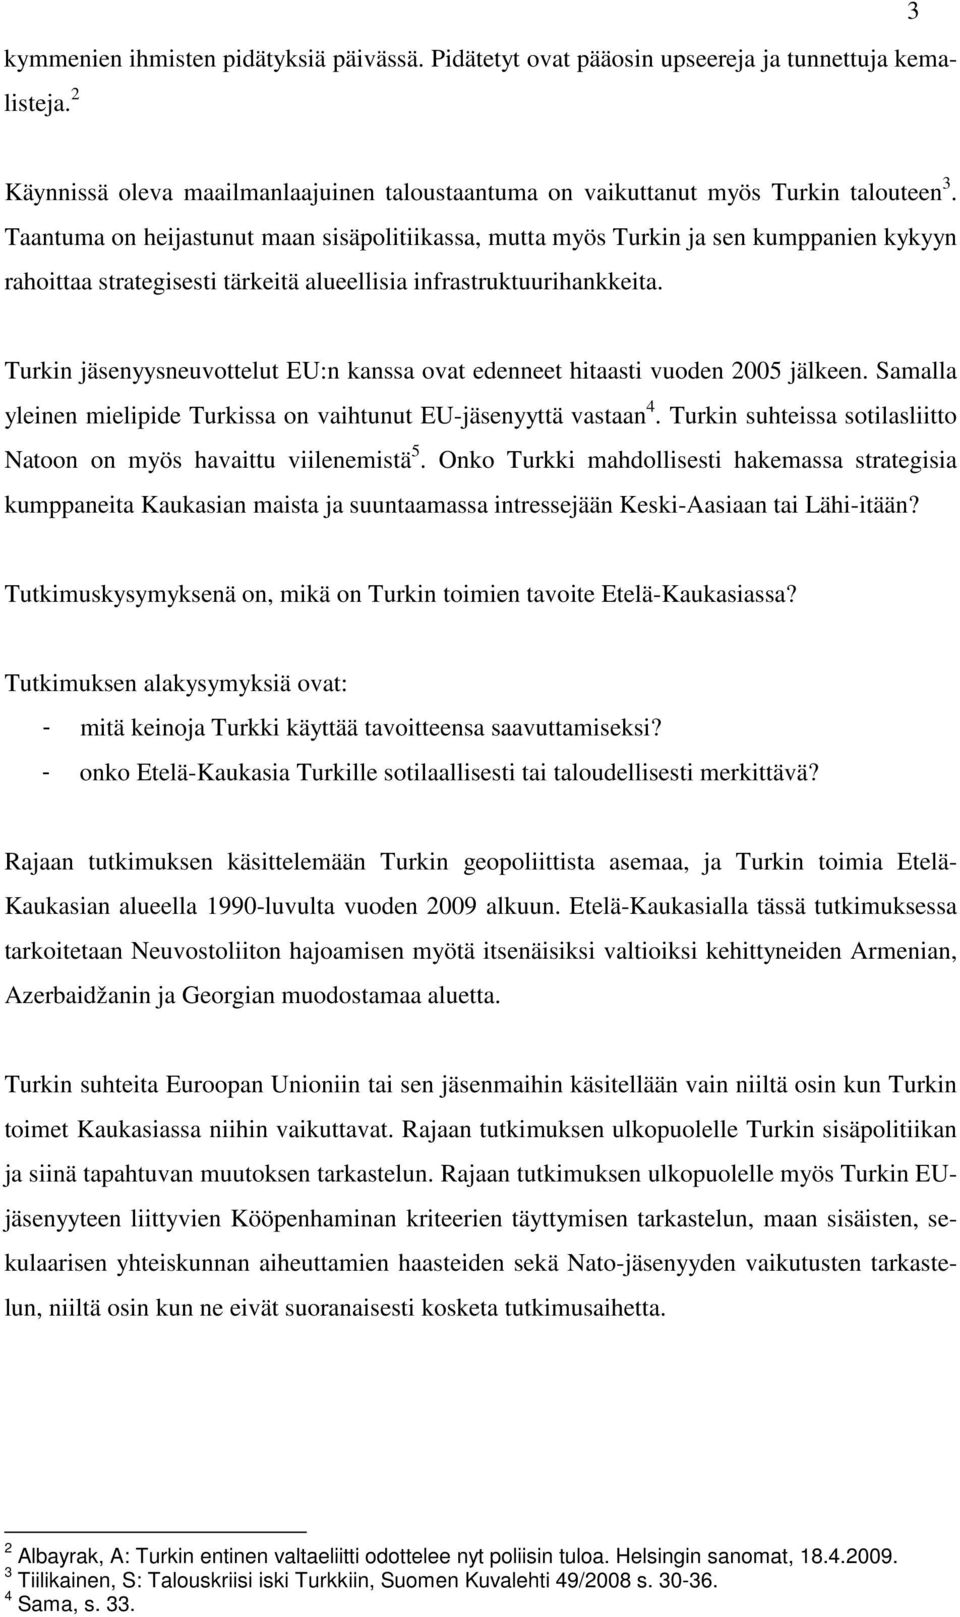 Turkin jäsenyysneuvottelut EU:n kanssa ovat edenneet hitaasti vuoden 2005 jälkeen. Samalla yleinen mielipide Turkissa on vaihtunut EU-jäsenyyttä vastaan 4.